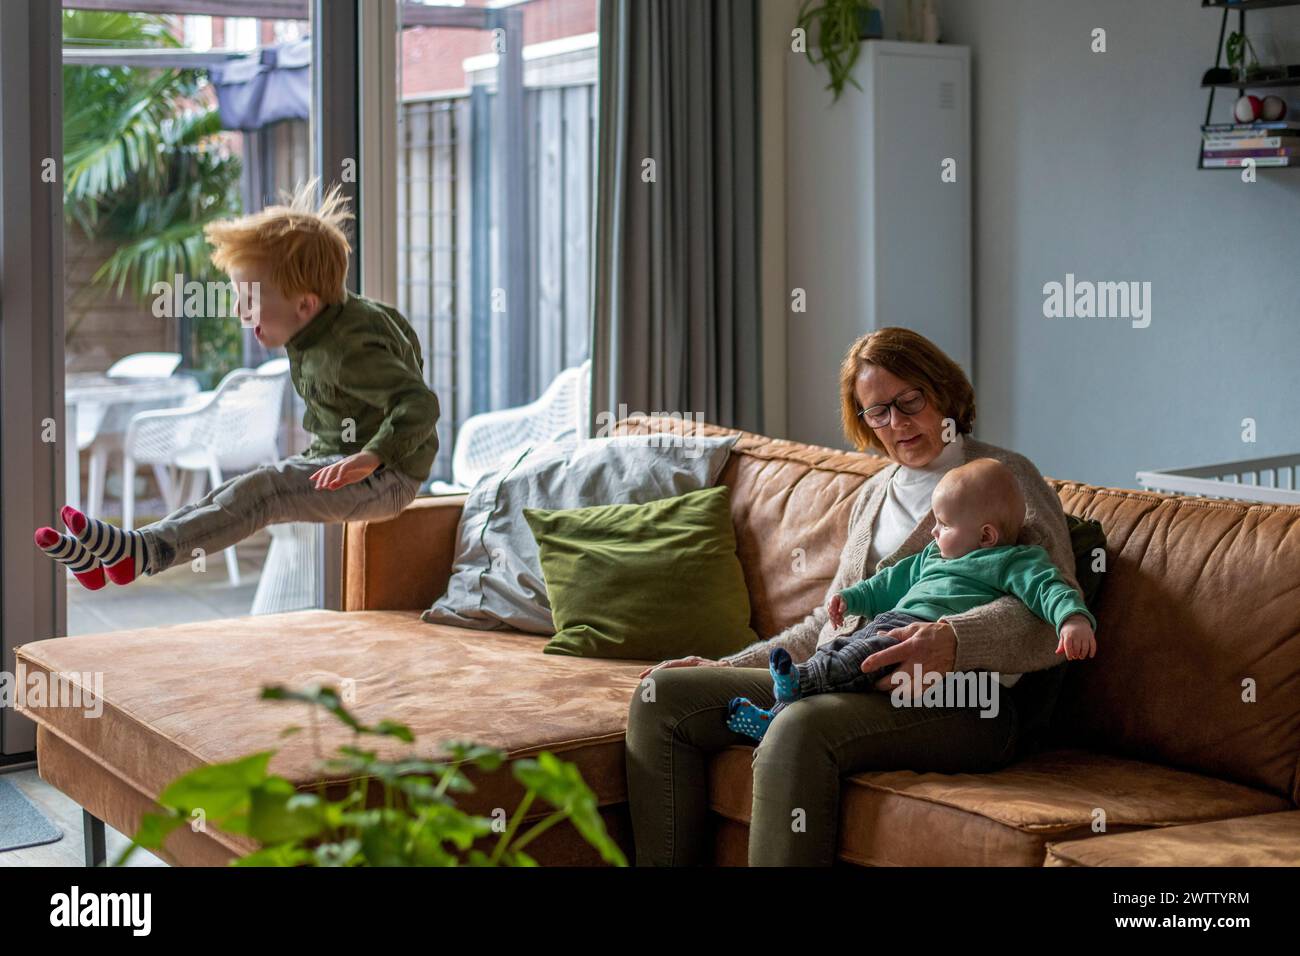 Familienmoment mit einem Kind, das auf der Couch springt, einem Kleinkind auf dem Schoß einer Frau ruht und einem gemütlichen Innenraum. Stockfoto